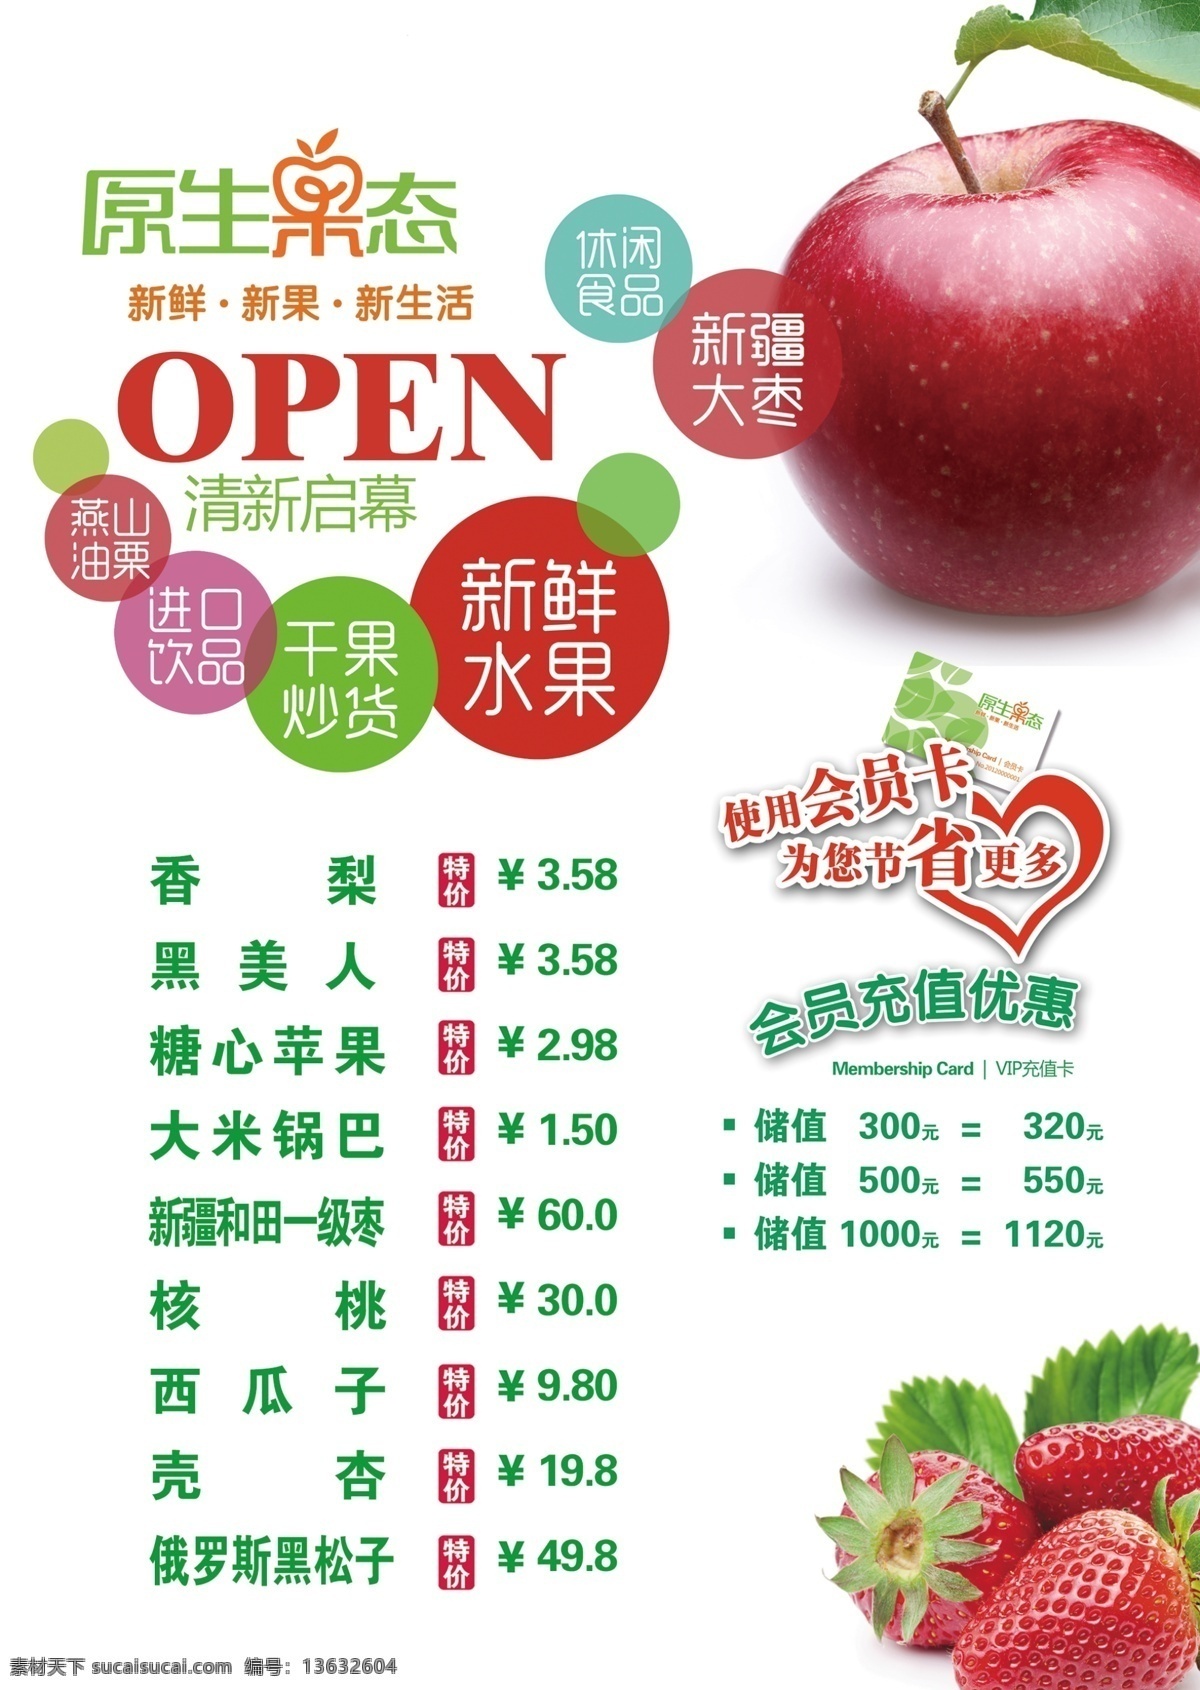 原生 果 态 open 草莓 会员卡 开业 苹果 水果 圆圈 原生果态 果品 海报 原创设计 原创海报